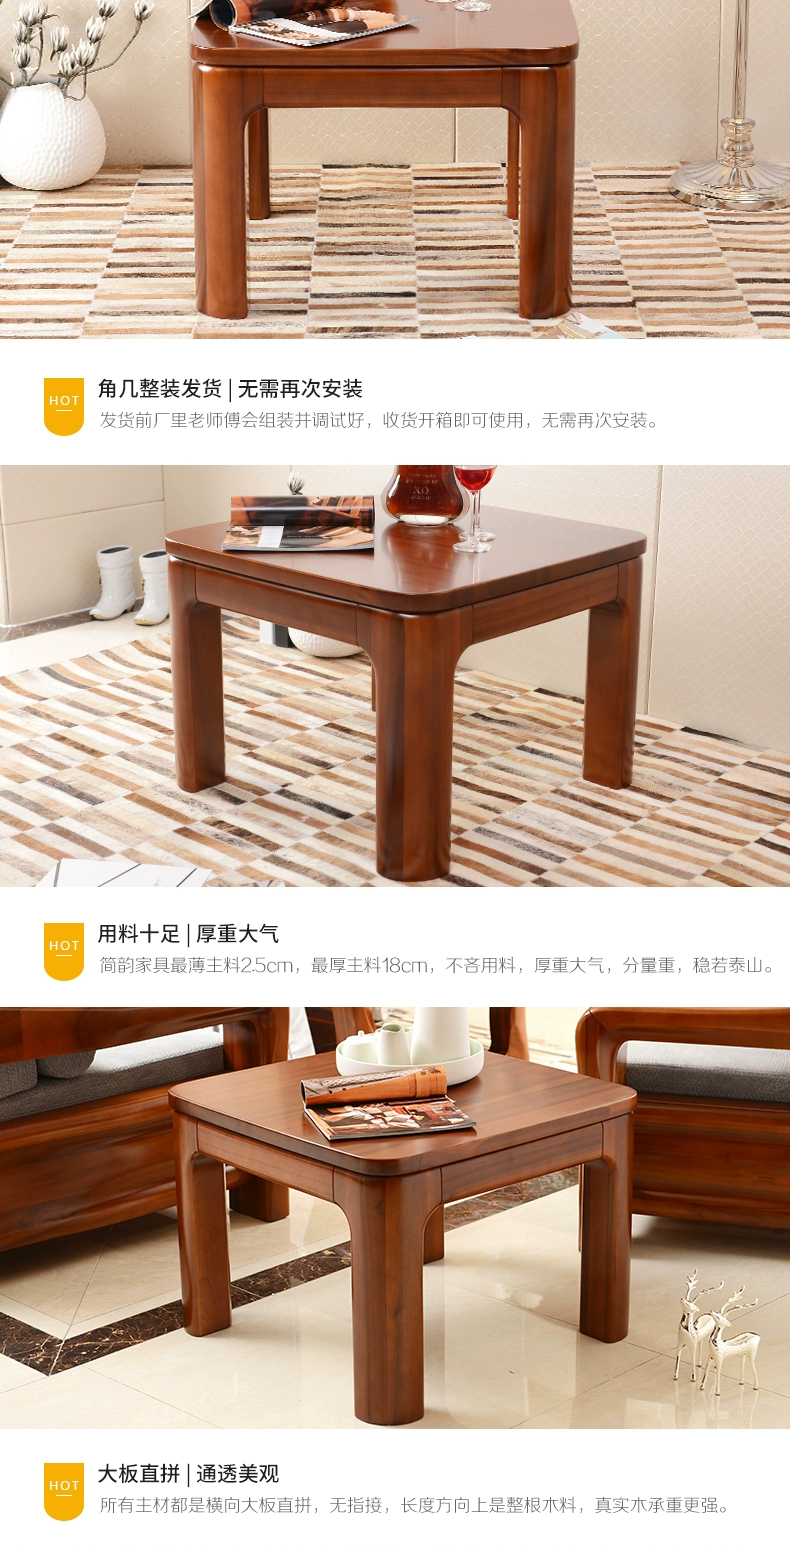 Jian Yun Bàn góc gỗ tếch Tất cả bàn góc bằng gỗ nguyên khối Đồ nội thất hiện đại của Trung Quốc Bàn ghế sofa bên cạnh Bàn vuông nhỏ Tất cả bàn góc bằng gỗ tếch - Bàn trà